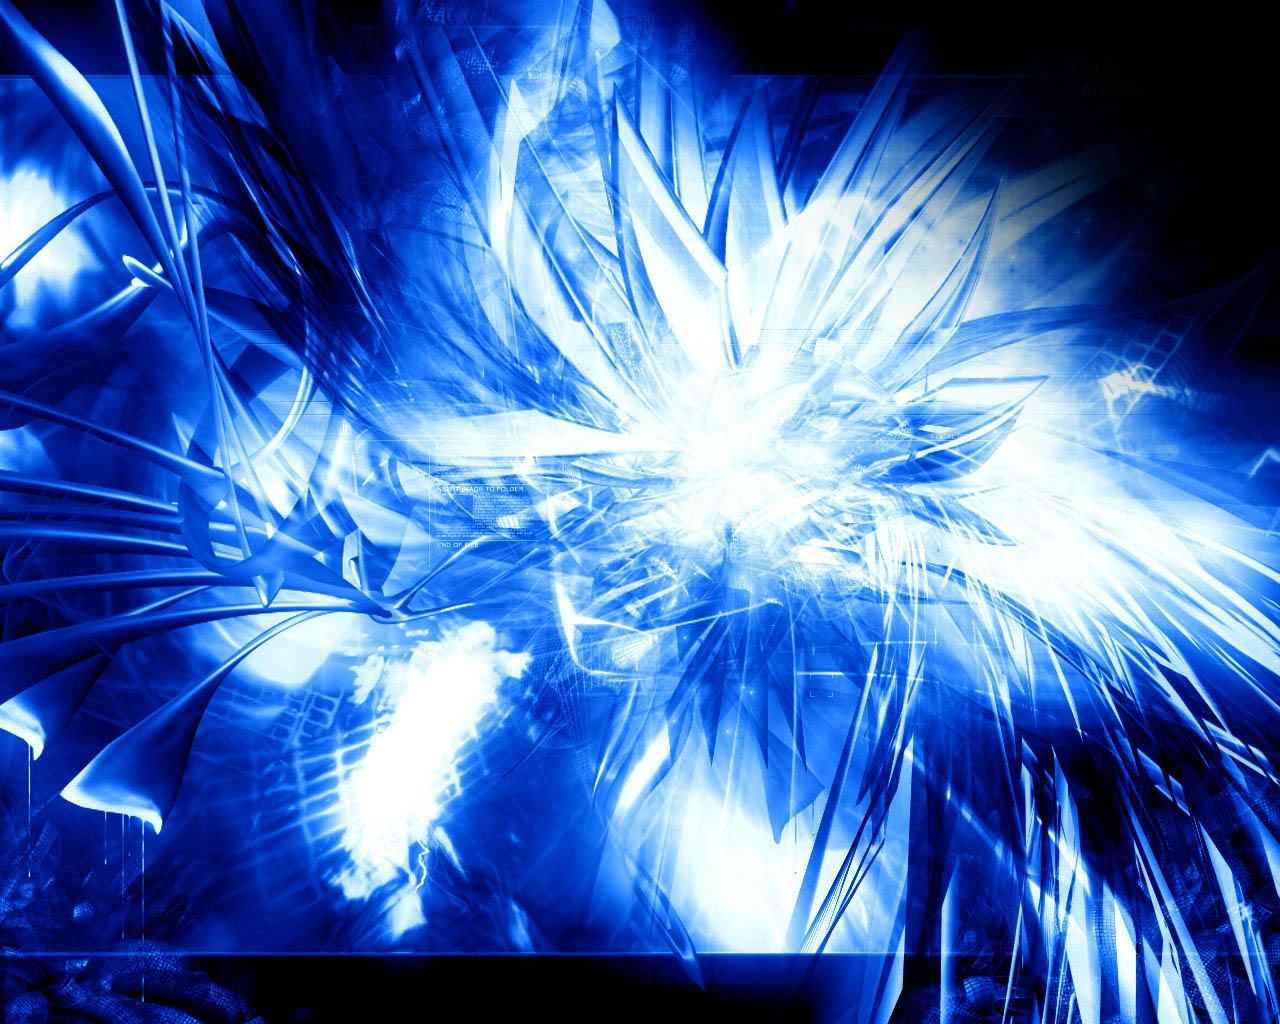 fonds d'écran cool pour ordinateur portable,bleu électrique,bleu,lumière,l'eau,ciel